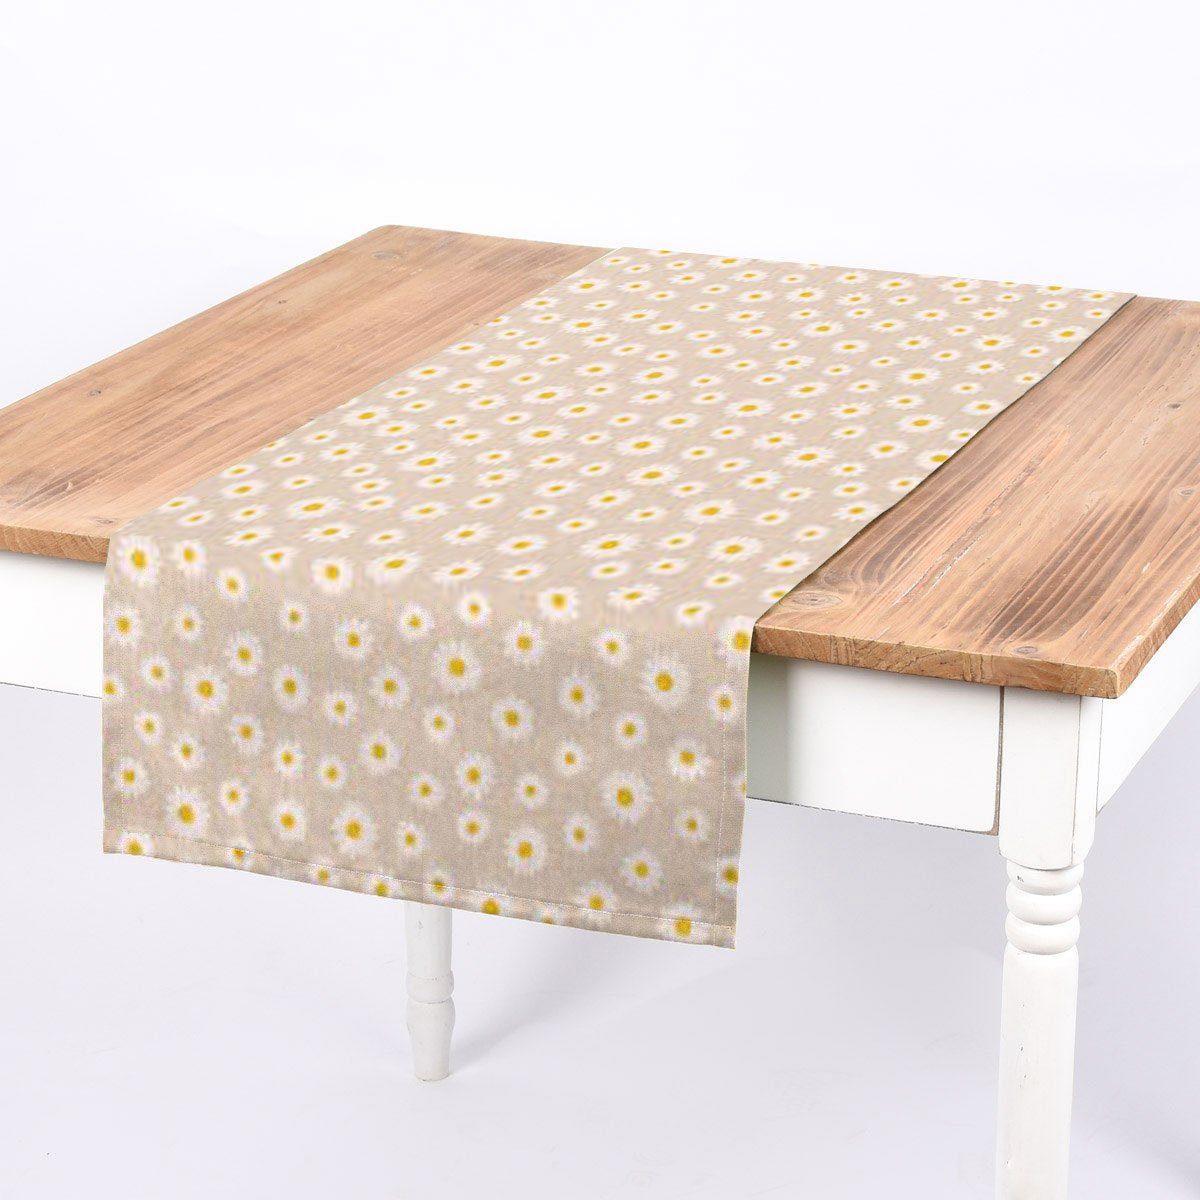 SCHÖNER LEBEN. Tischläufer SCHÖNER LEBEN. Tischläufer Gänseblümchen natur 40x160cm, handmade